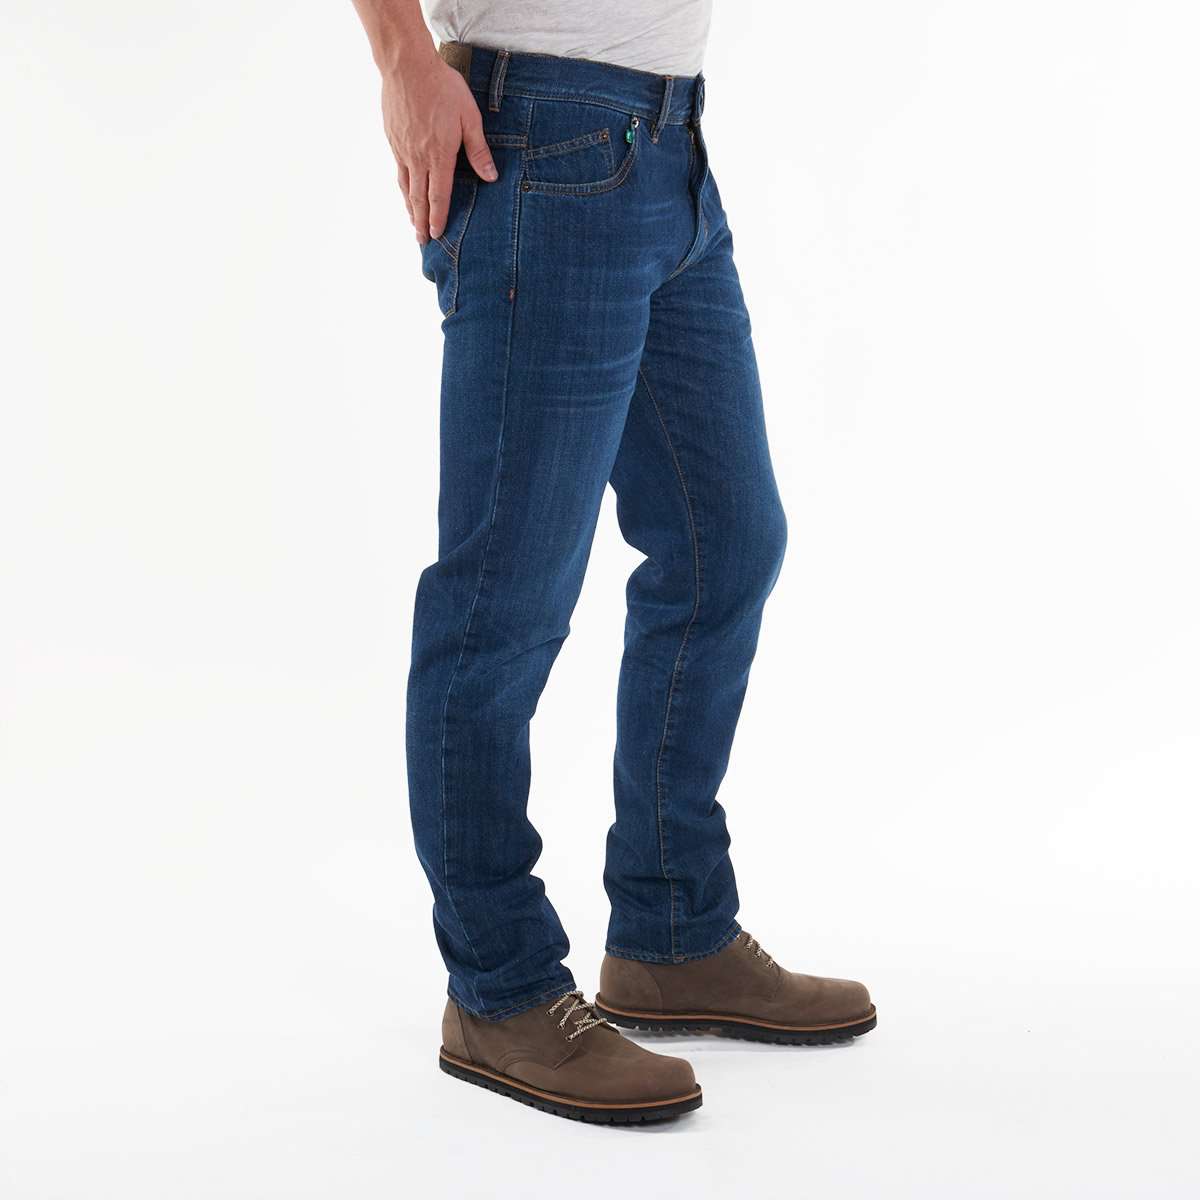 Herren-Jeans von fairjeans: Regular Fit, bequeme Gerade, 100% Bio-Baumwolle, leichter Used-Look